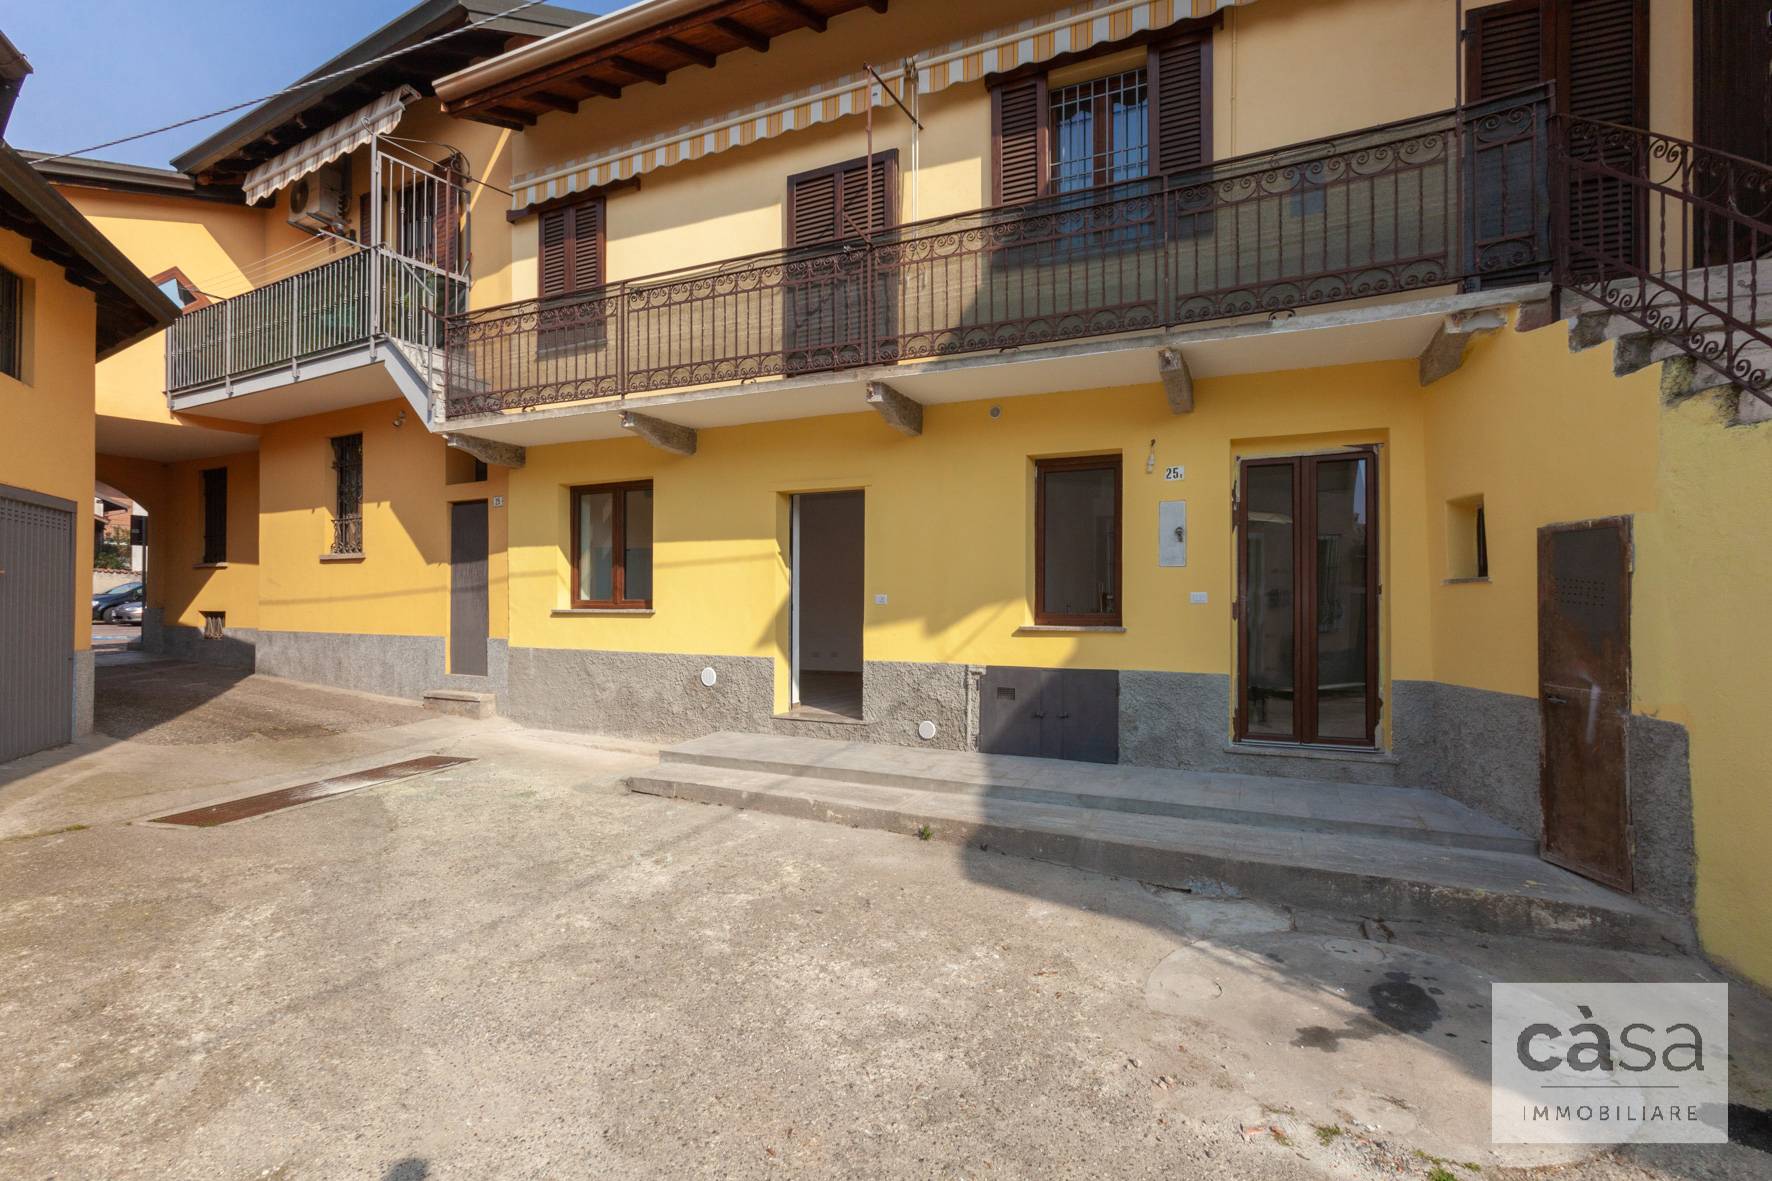 Appartamento in vendita a Cardano al Campo, 3 locali, prezzo € 99.000 | PortaleAgenzieImmobiliari.it